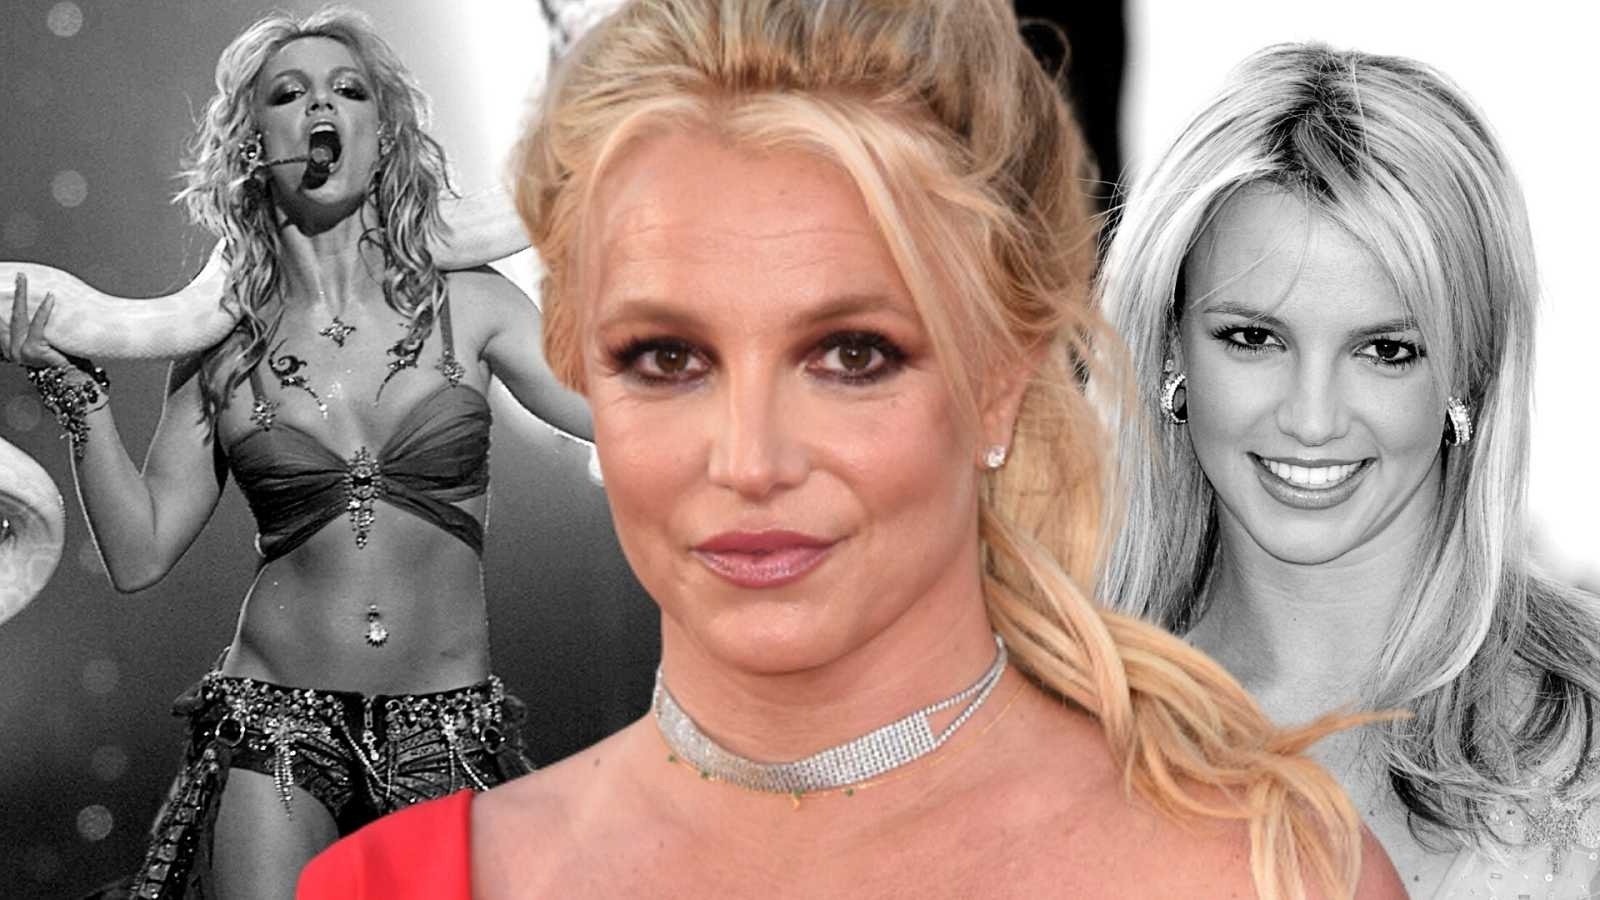 Hi va haver romanç entre Britney Spears i el príncep Guillem, però no va sortir bé